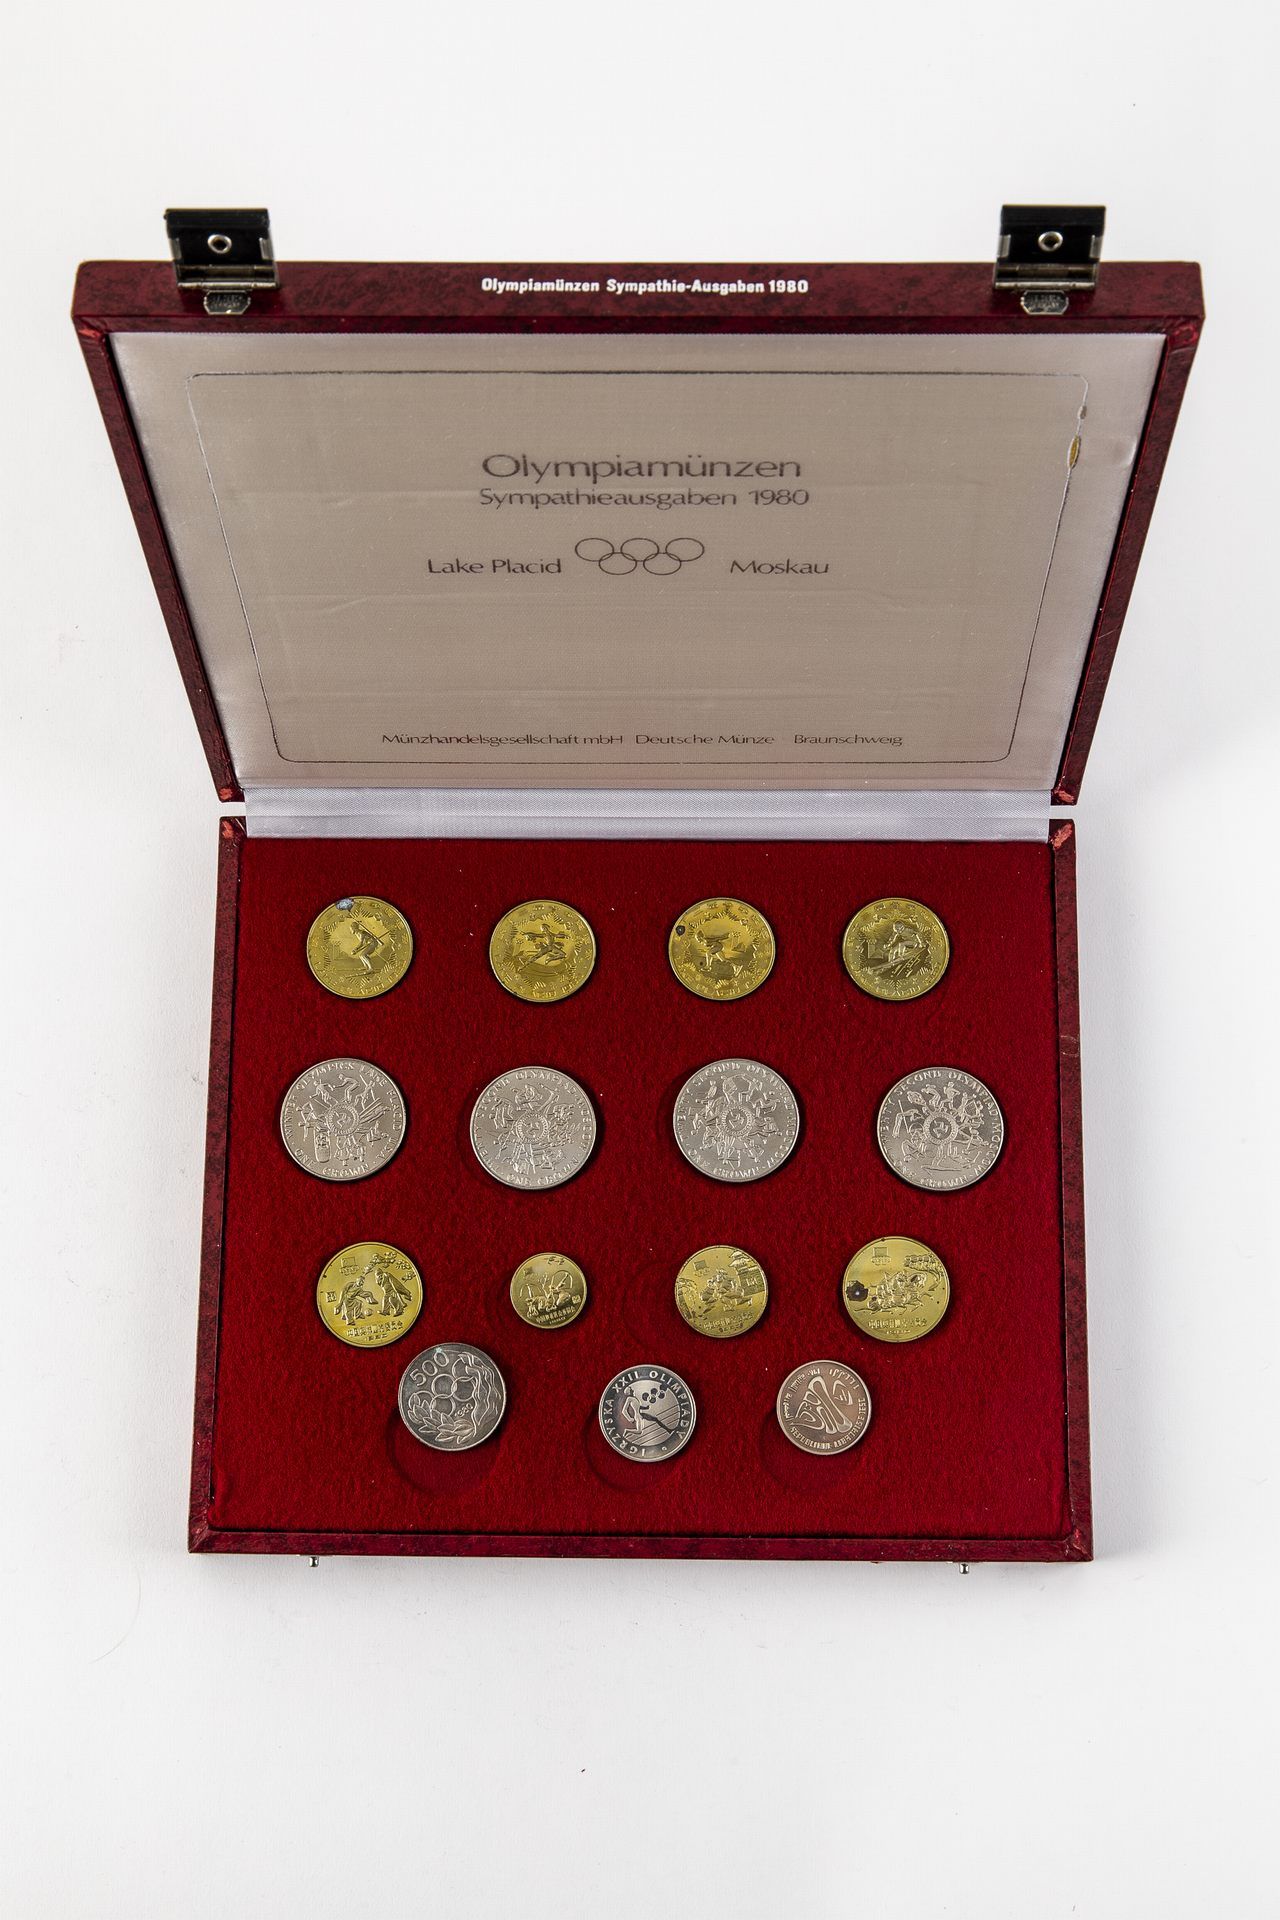 Olympiamünzen Sympathie-Ausgaben 1980